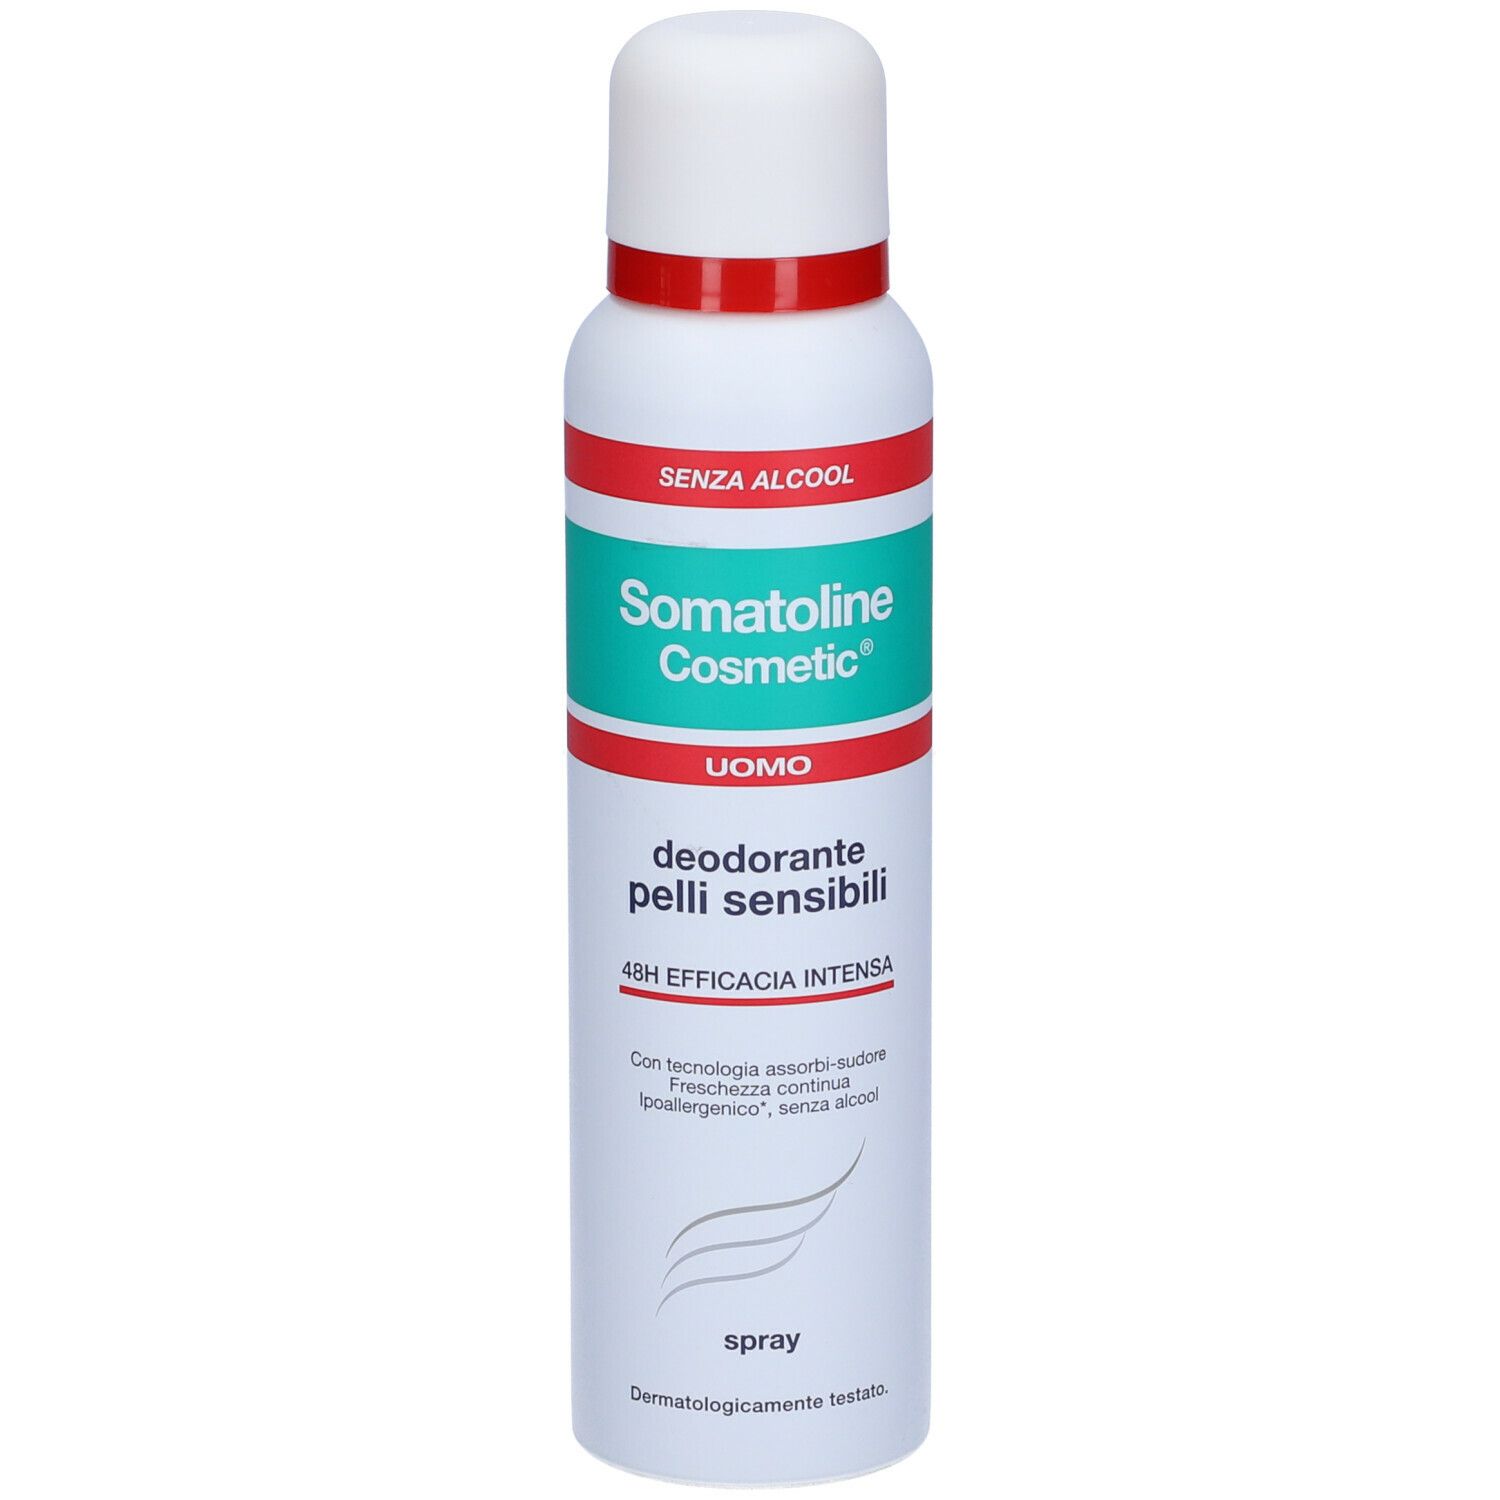 Somatoline Cosmetic® Deodorante Pelli Sensibili Uomo